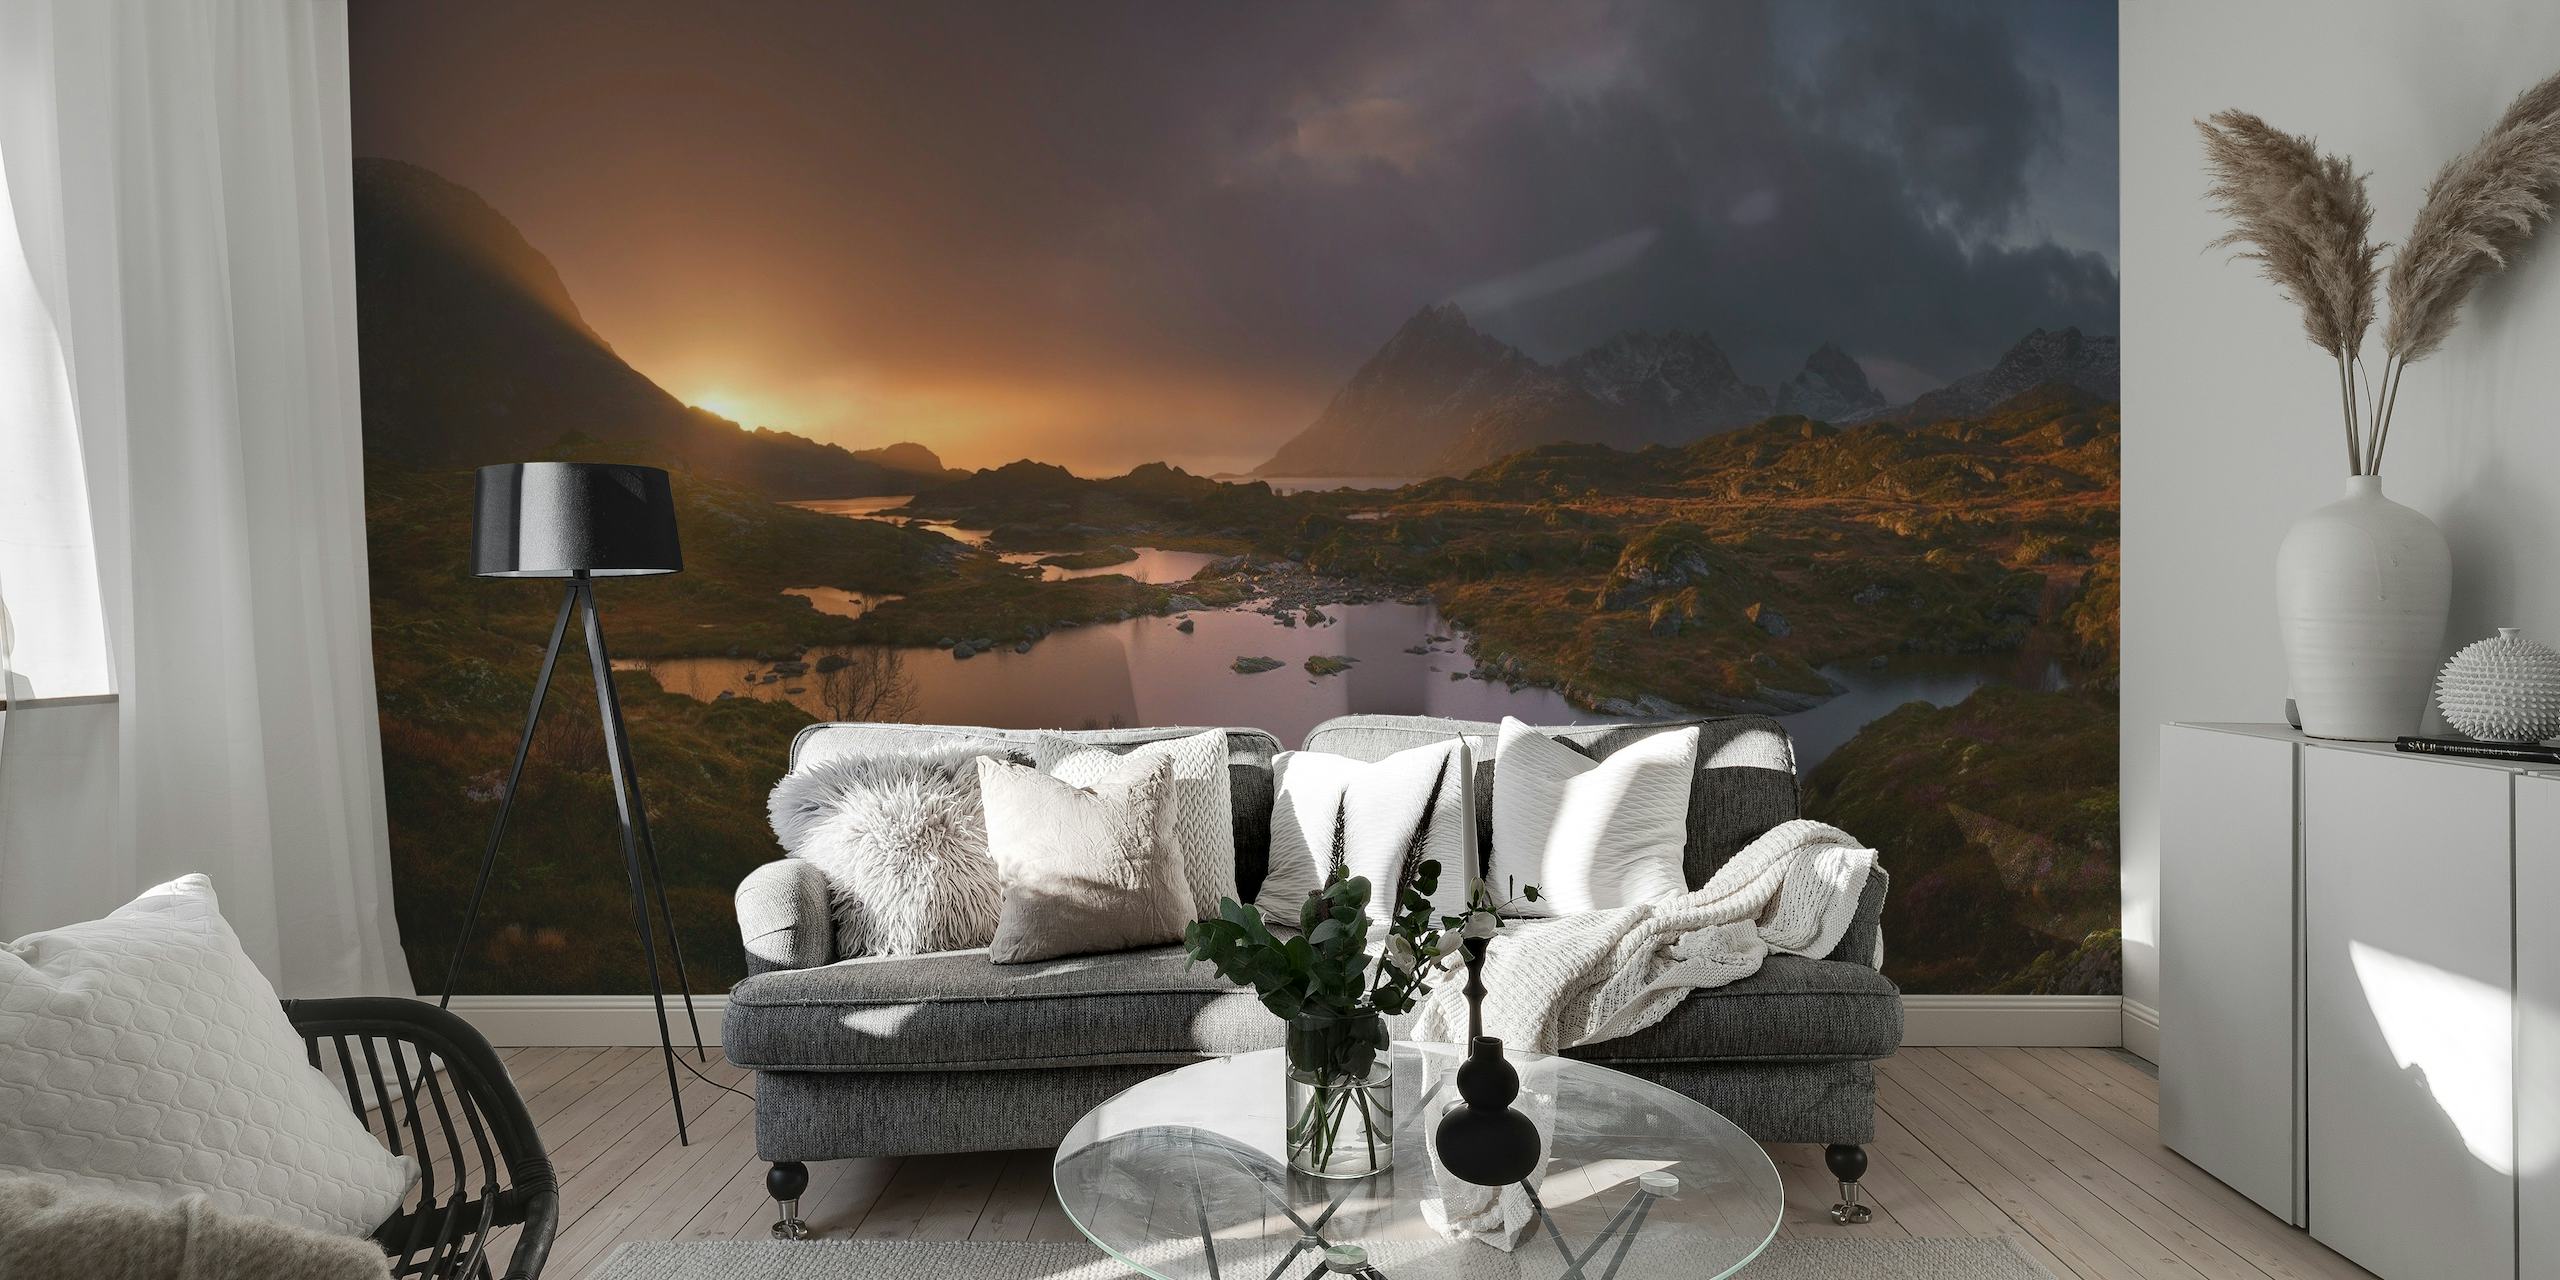 Zonsopgang boven de Lofoten muurschildering met het rustige ochtendlicht op het Noorse landschap met bergen en meren.